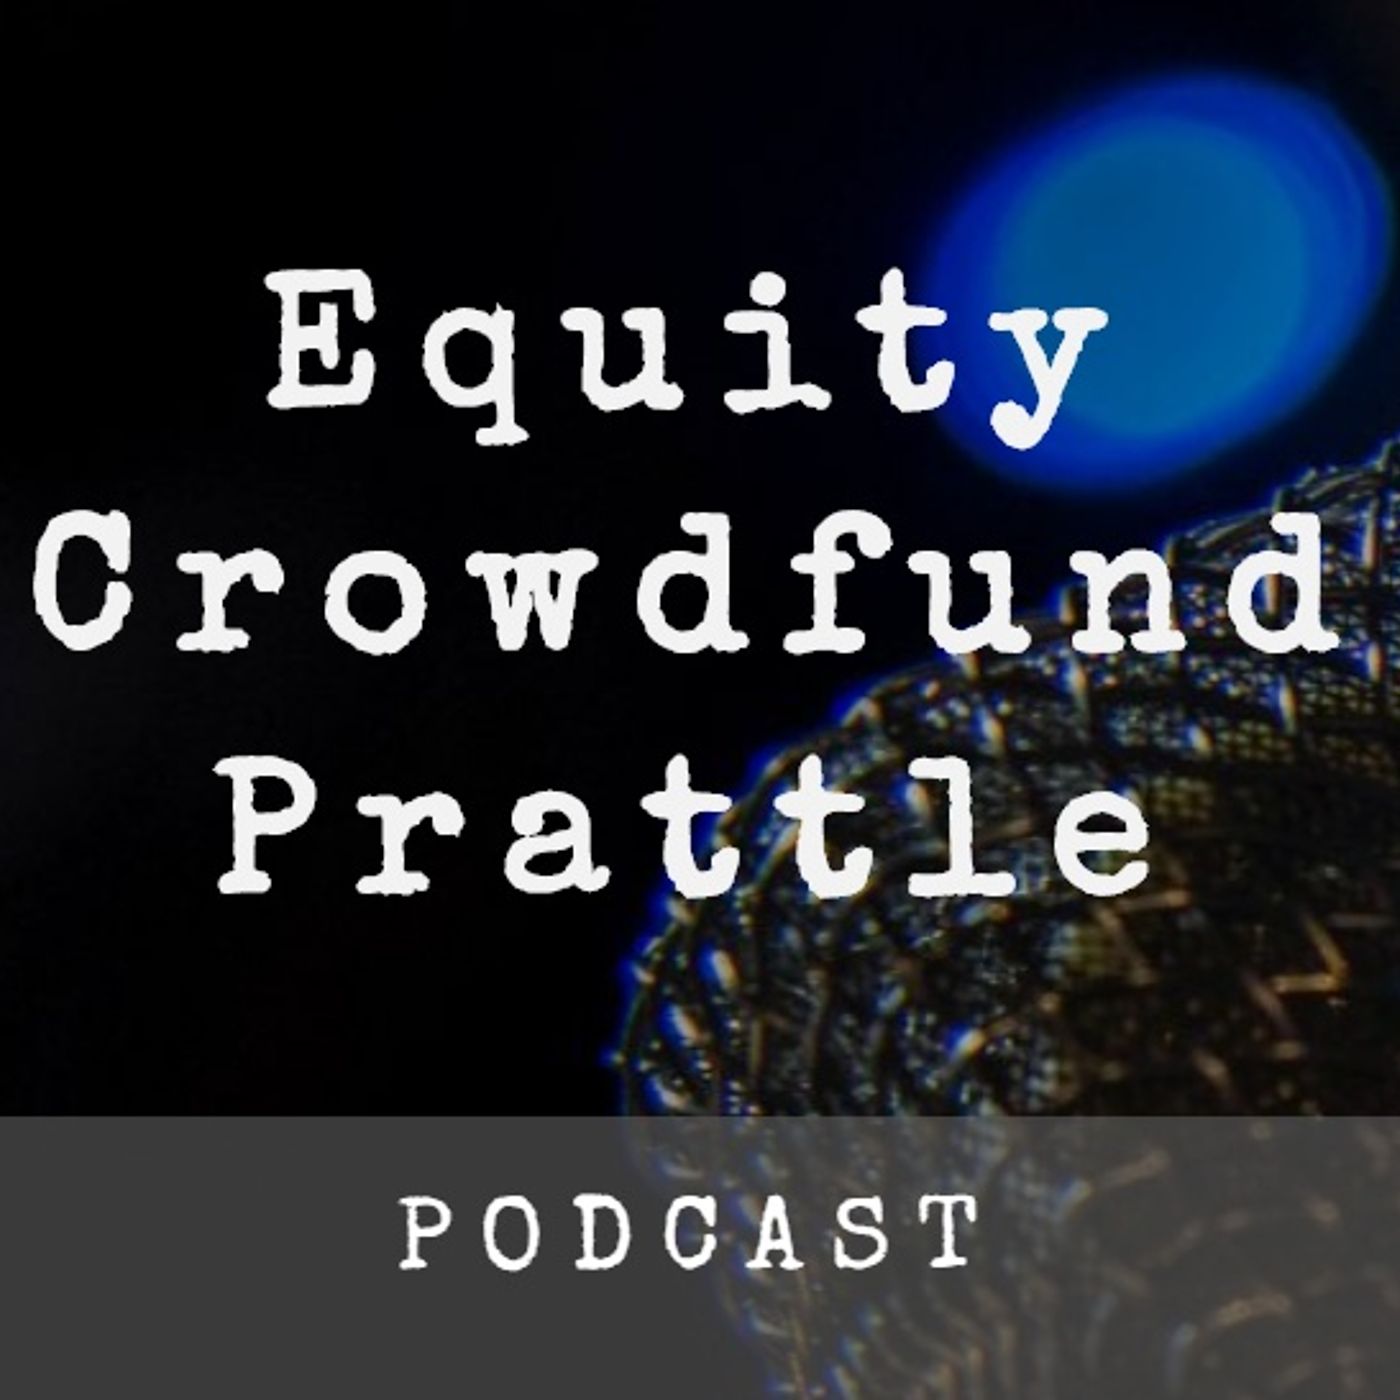 Equity Crowdfund Prattle